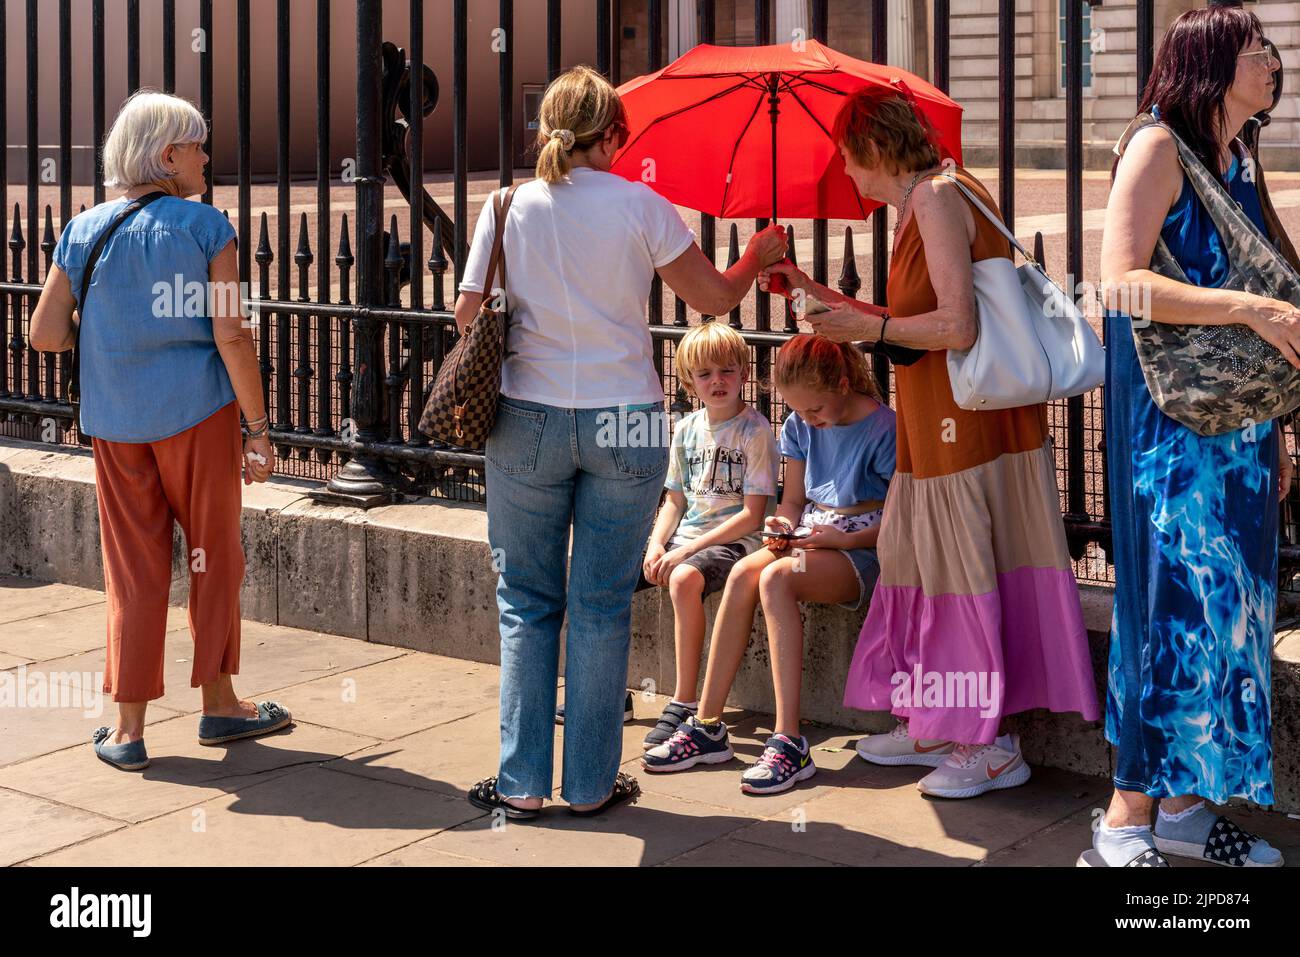 Zwei Kinder werden am heißesten aufgezeichneten Tag, London, Großbritannien, mit einem Regenschirm vor dem Buckingham Palace von der Sonne abgeschirmt Stockfoto